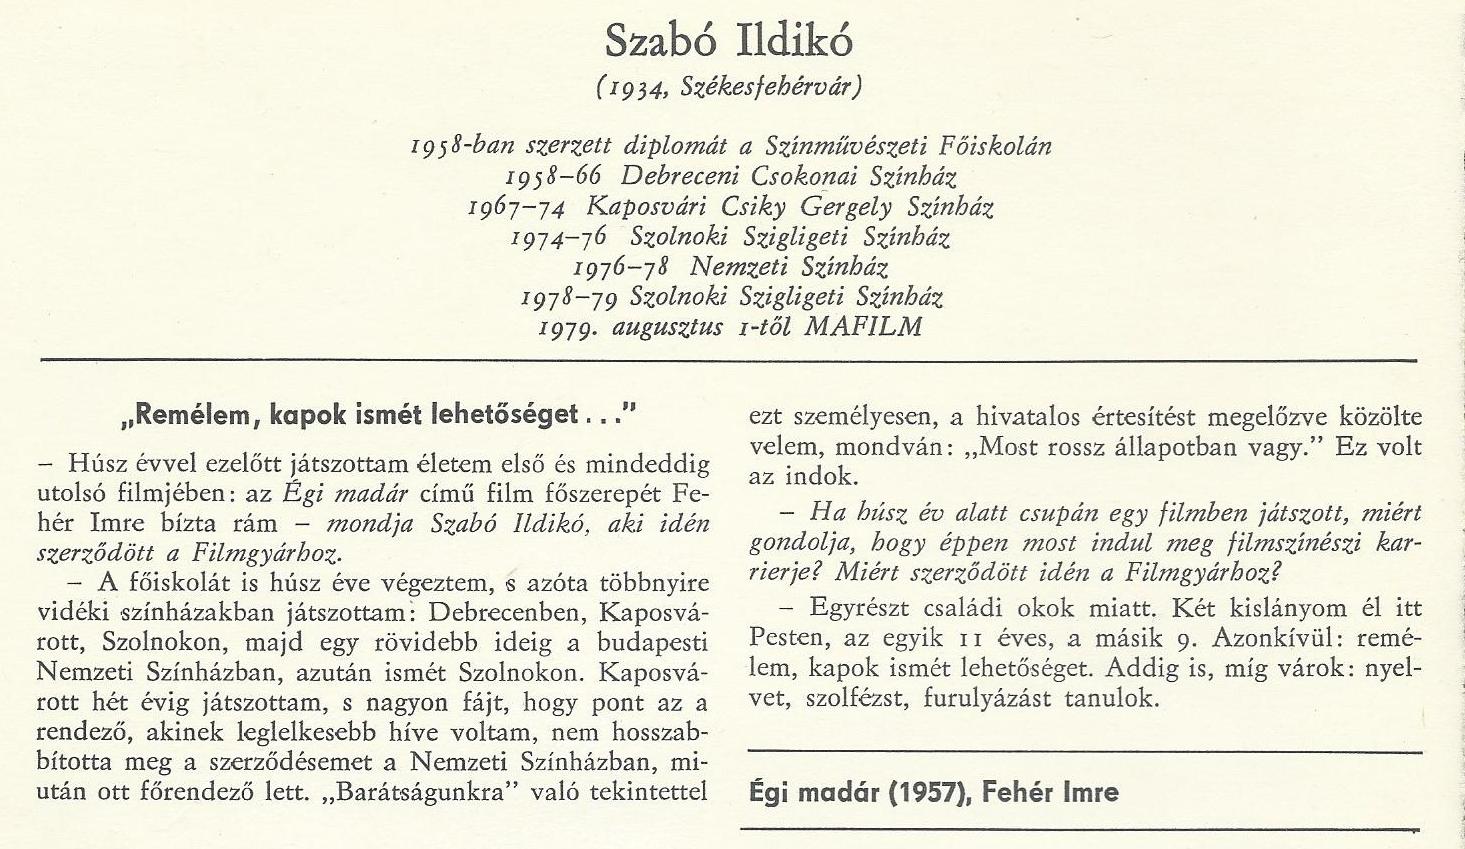 SzabóIldikó1934.jpg